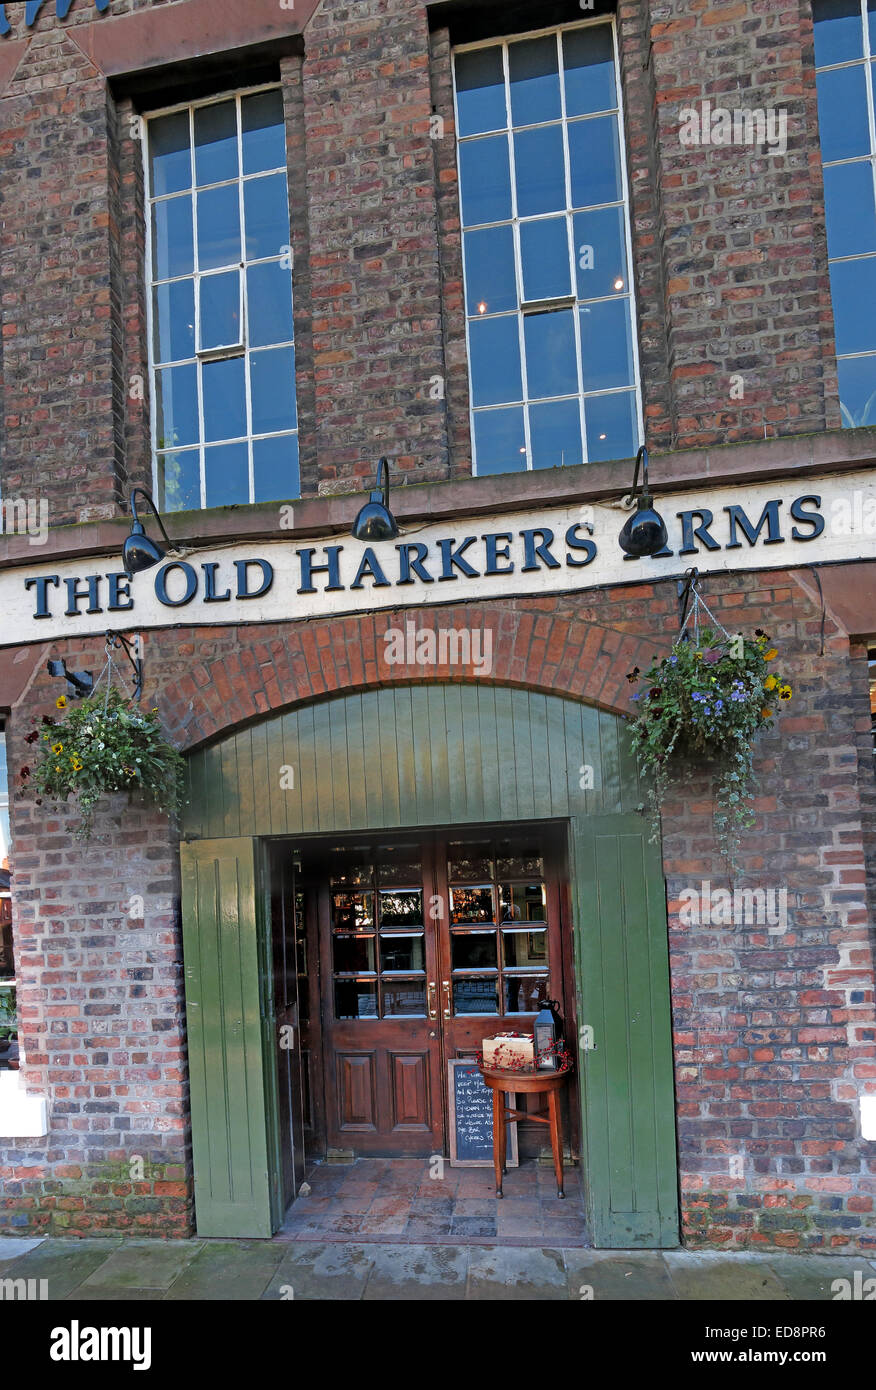 The Old Harkers Arms, la chaîne de pubs Brun et Price, Canalside, Chester City, Angleterre, Royaume-Uni Banque D'Images